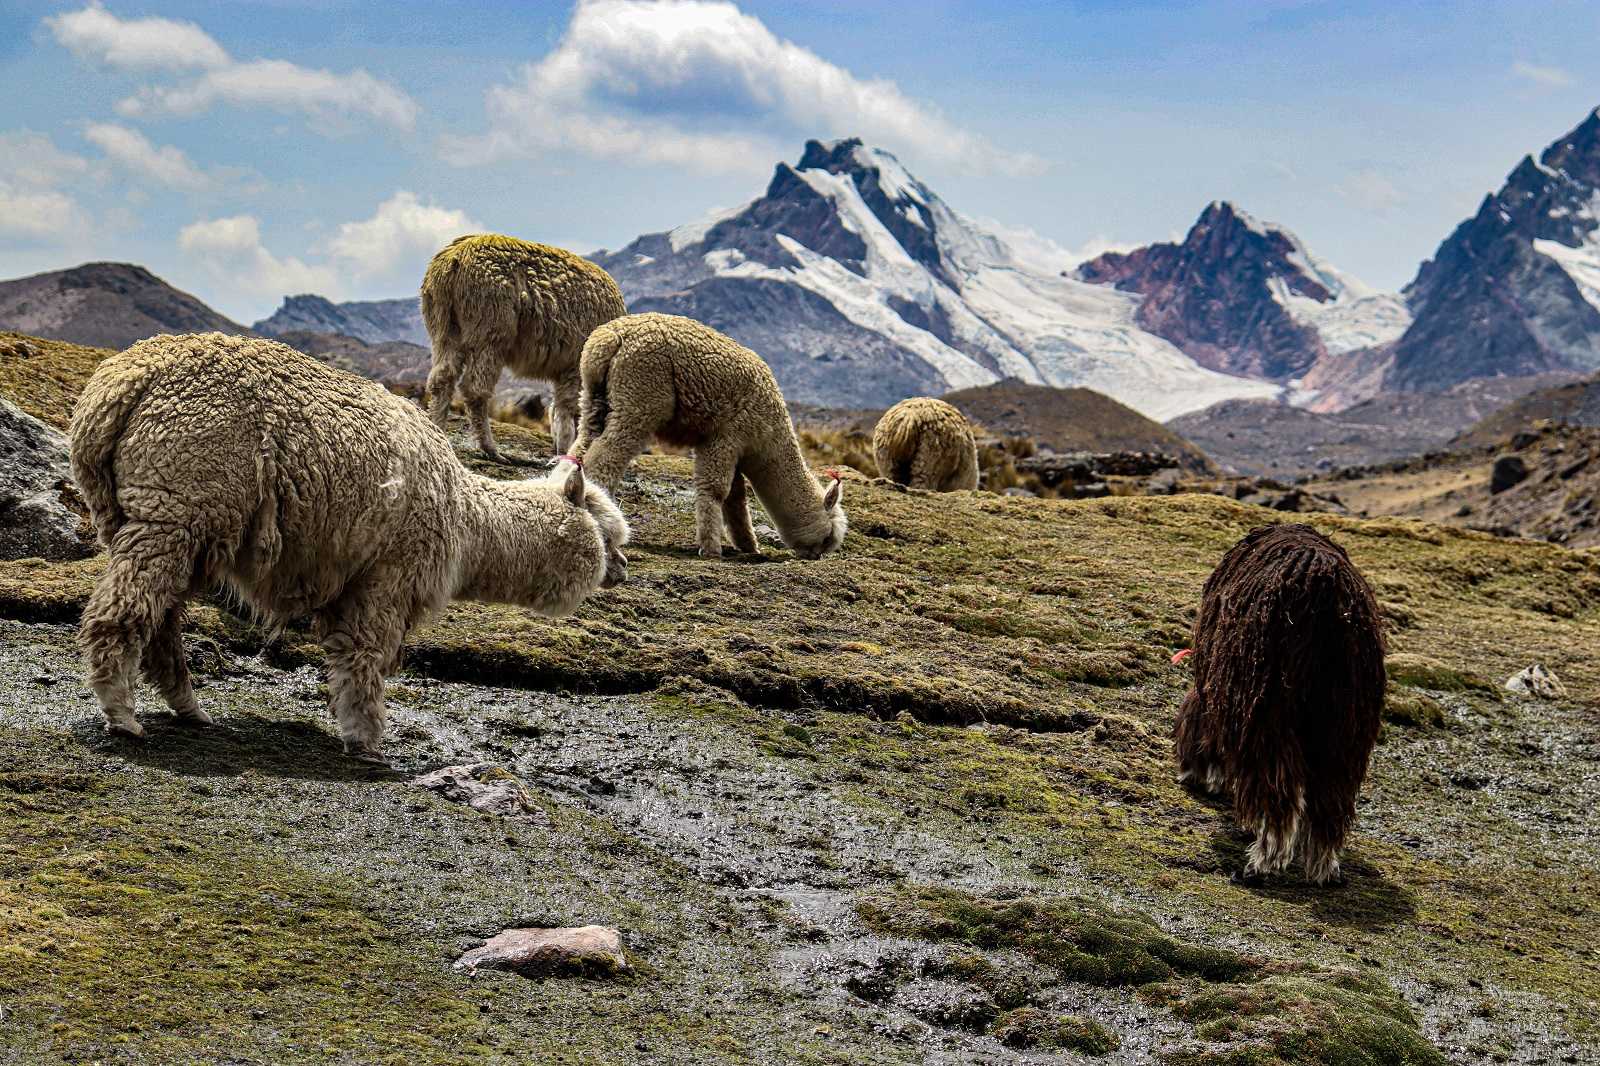 Diet of alpacas